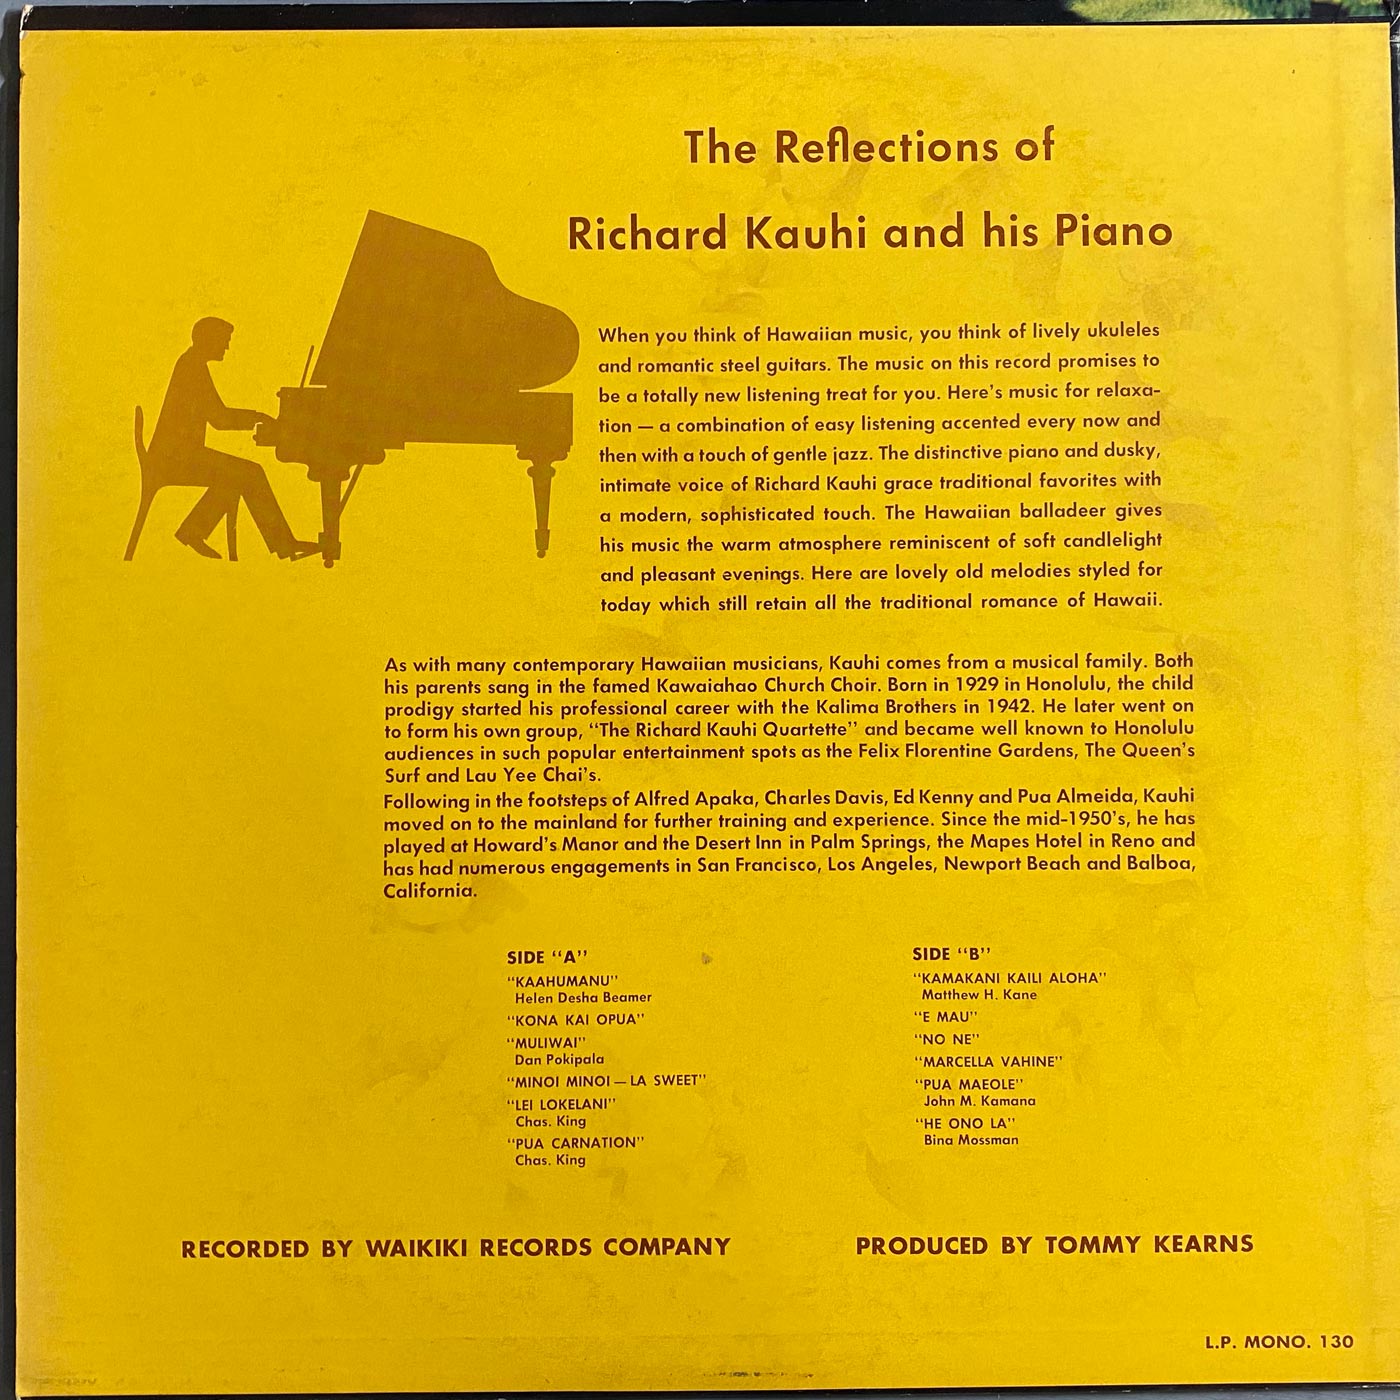 Richard Kauhi - Hawaiian Reflections